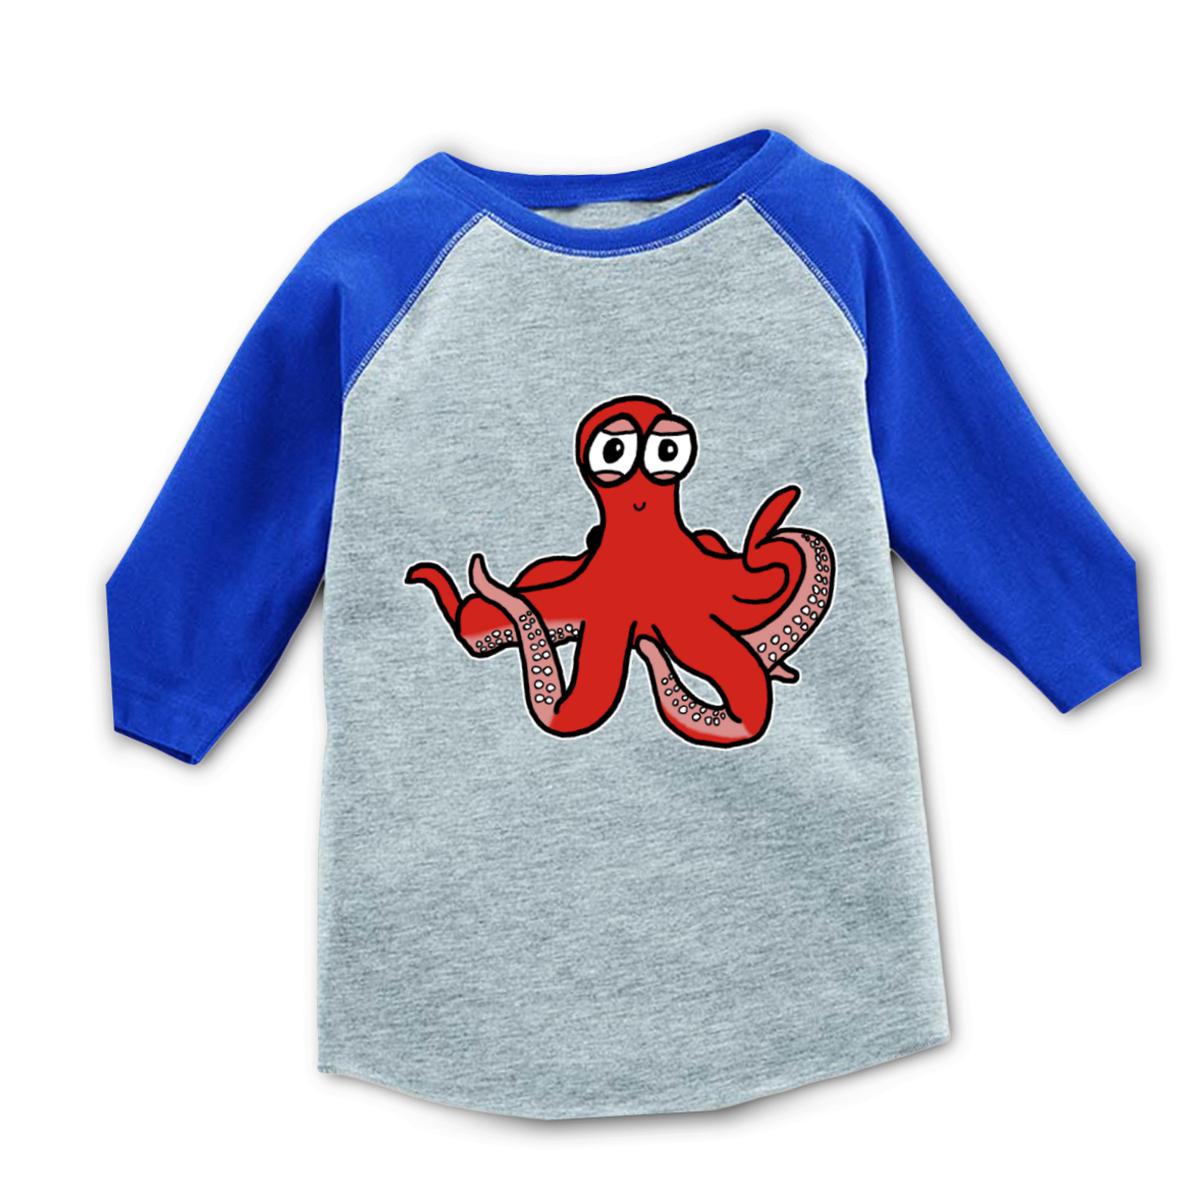 Octopus Toddler Raglan Tee 4T heather-royal